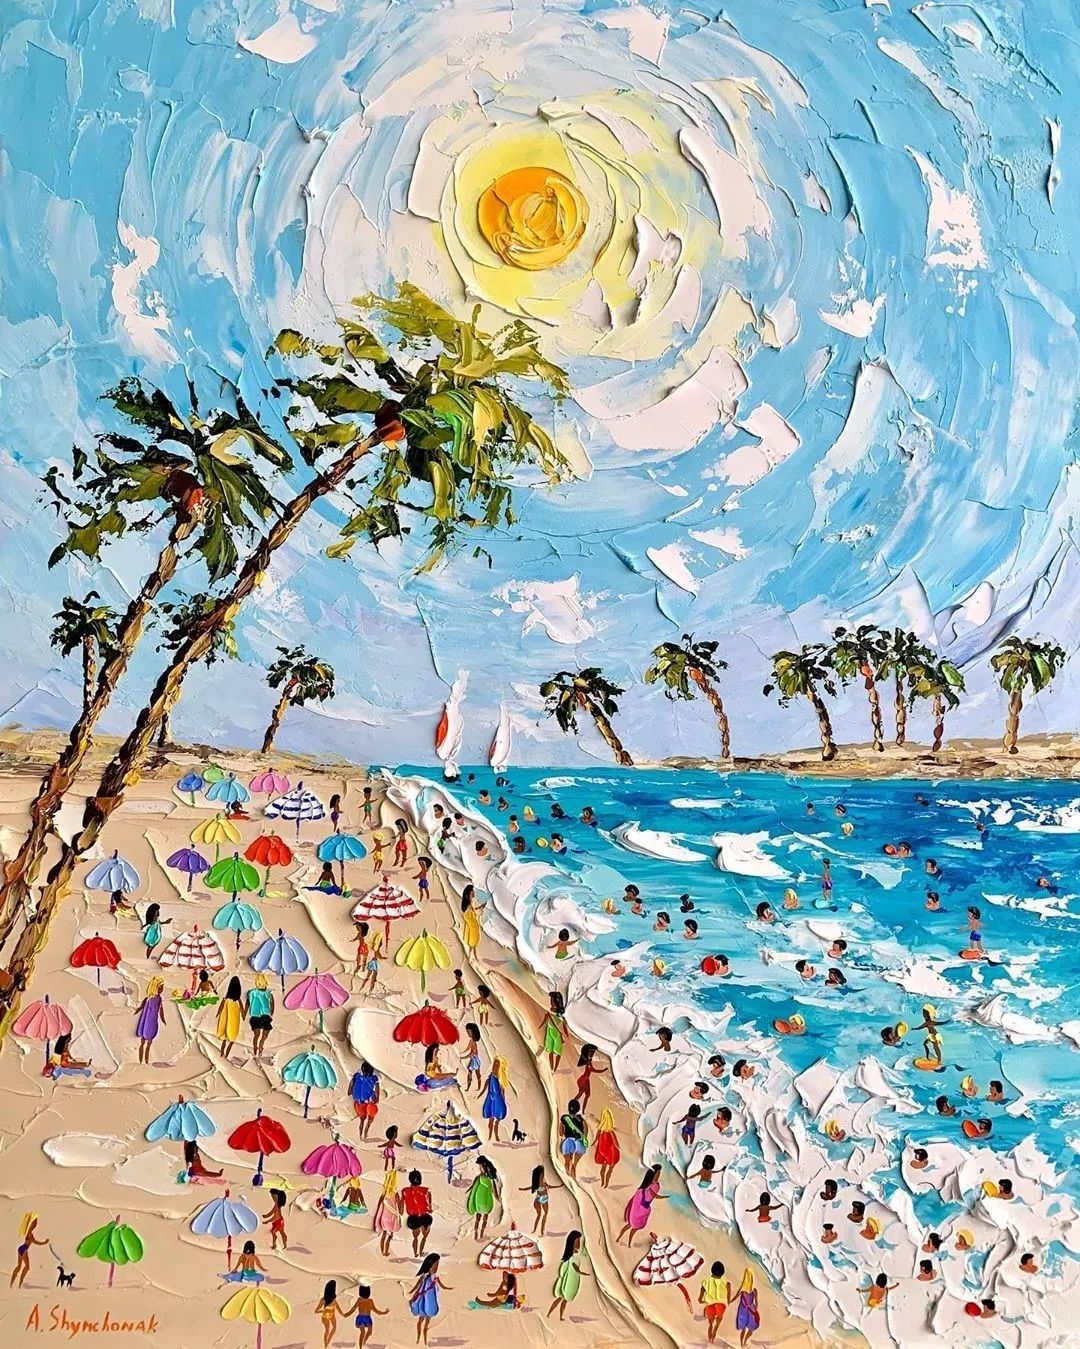 蓝白相间的阳光沙滩画成油画也超美,只看一眼就惊艳到了我,简直越看越